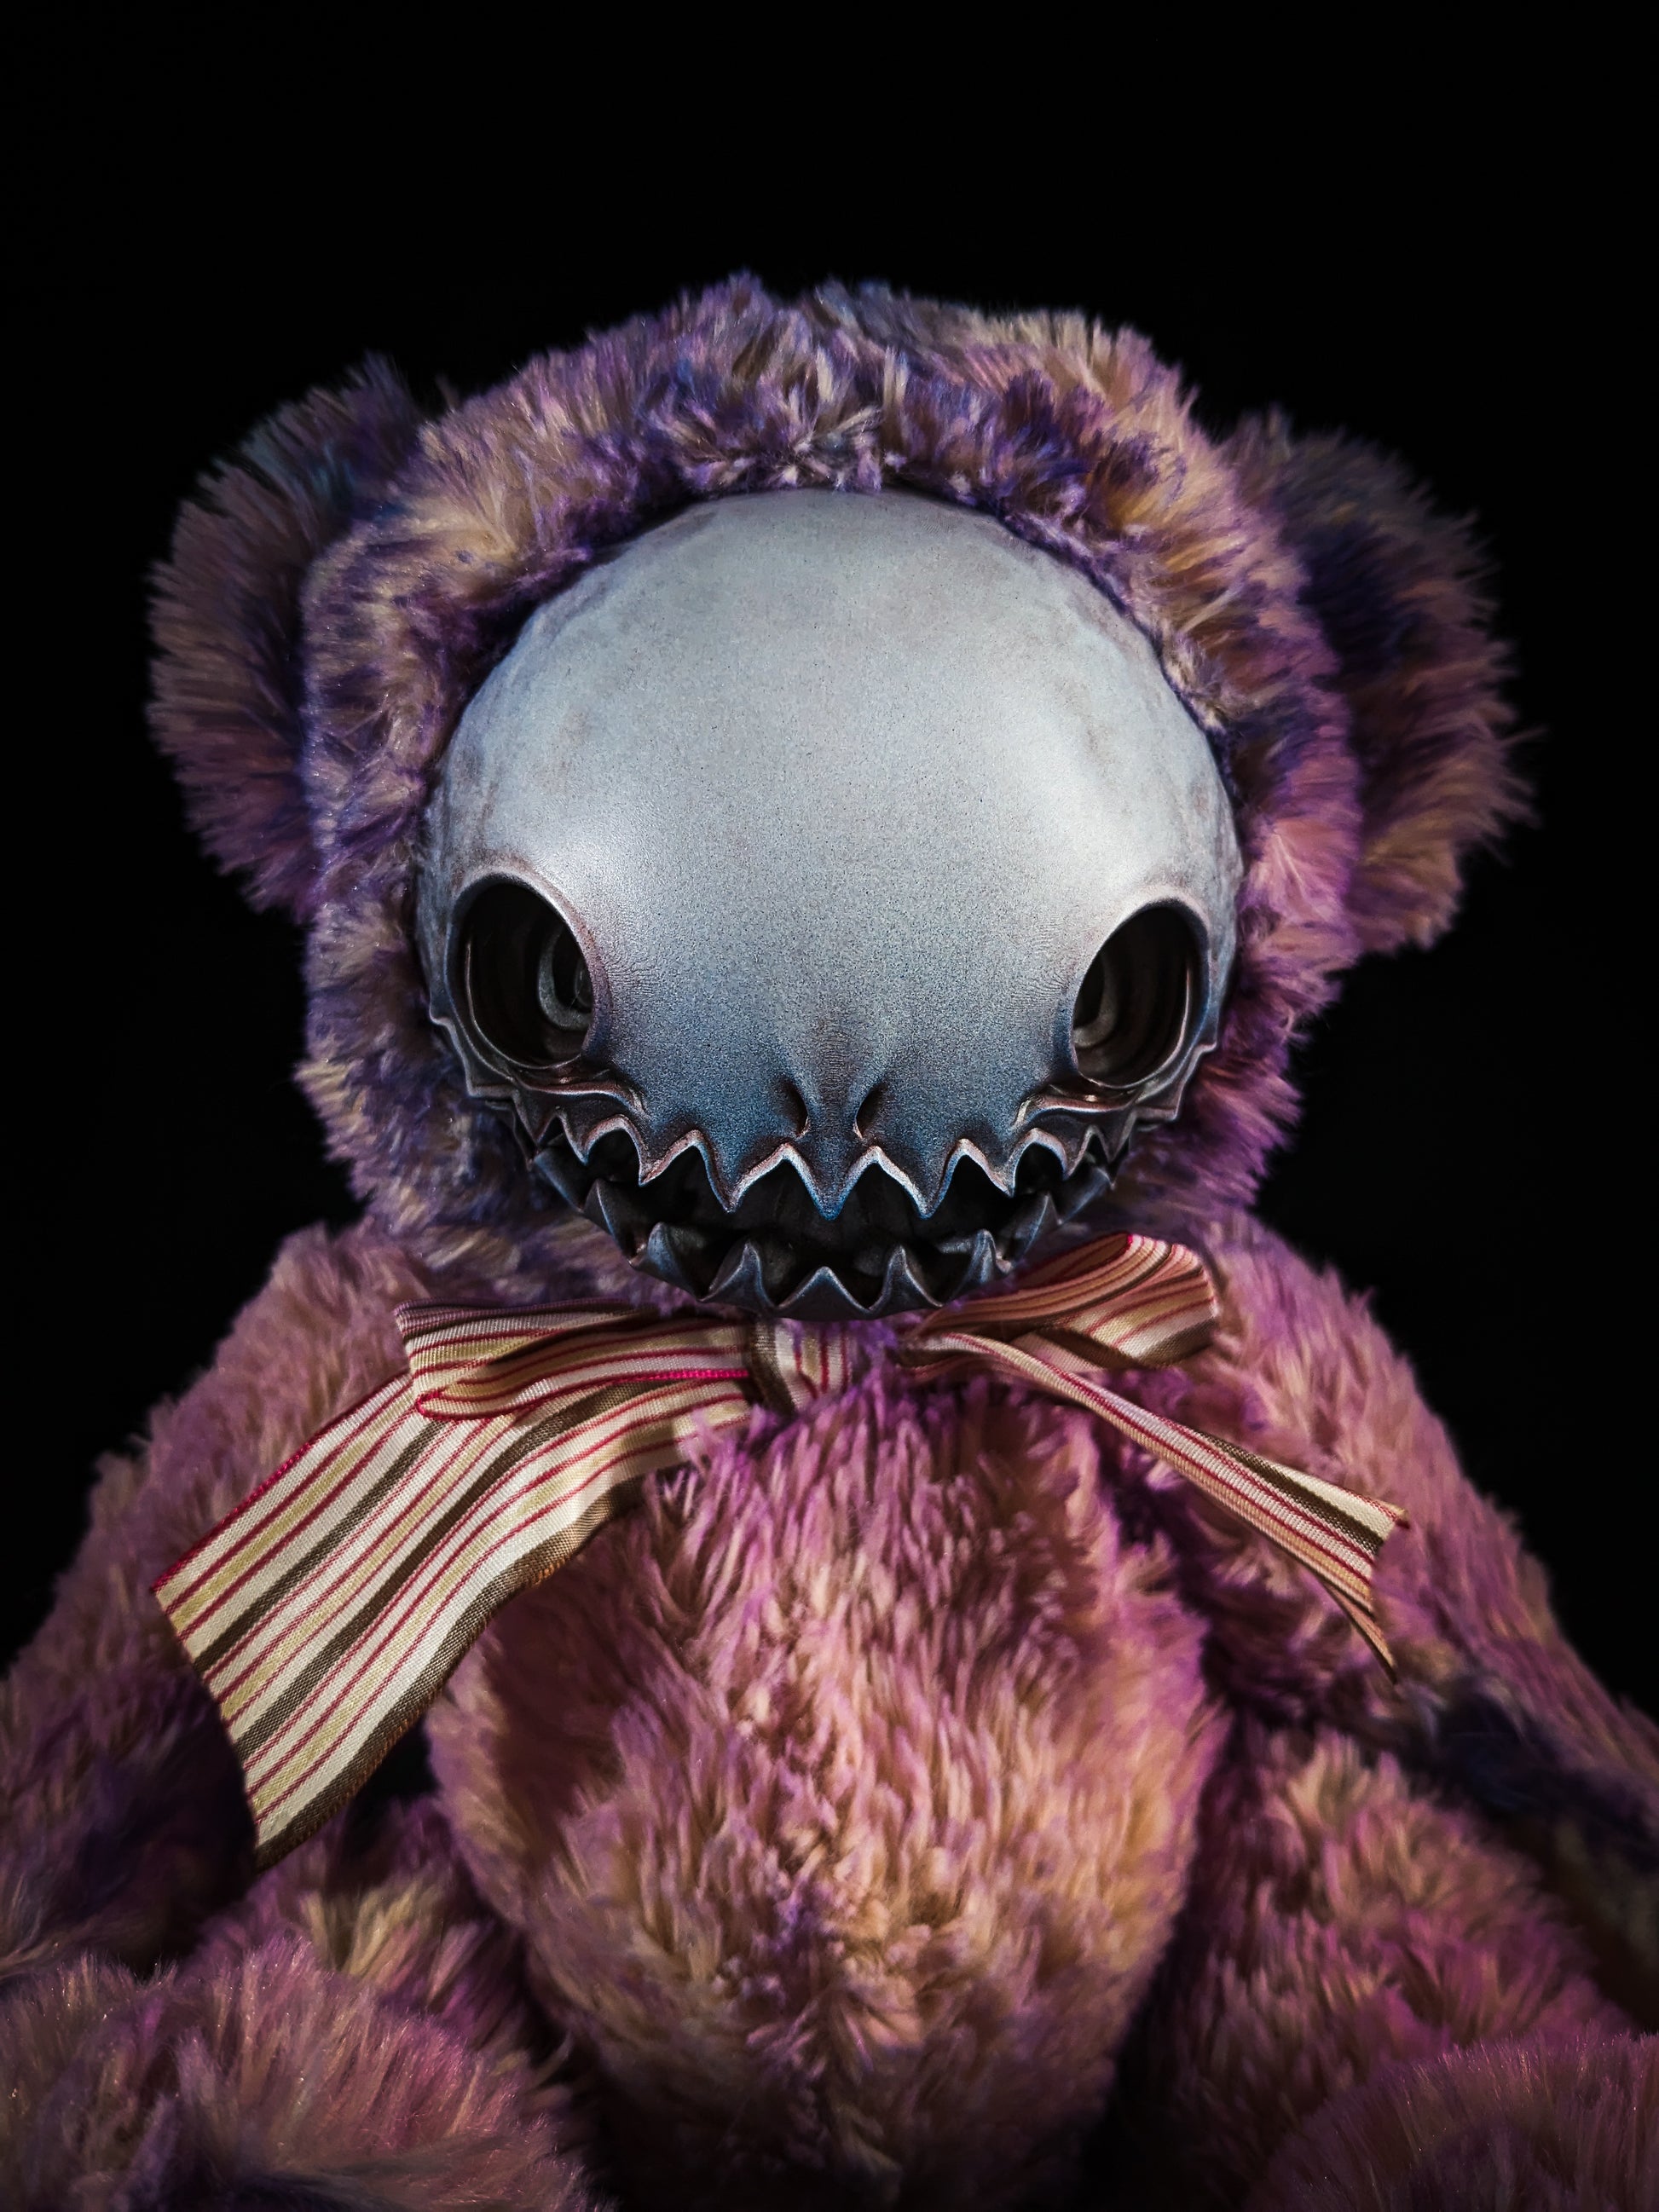 Haluwo (Ectofrenzy Ver.) - Monster Art Doll Plush Toy